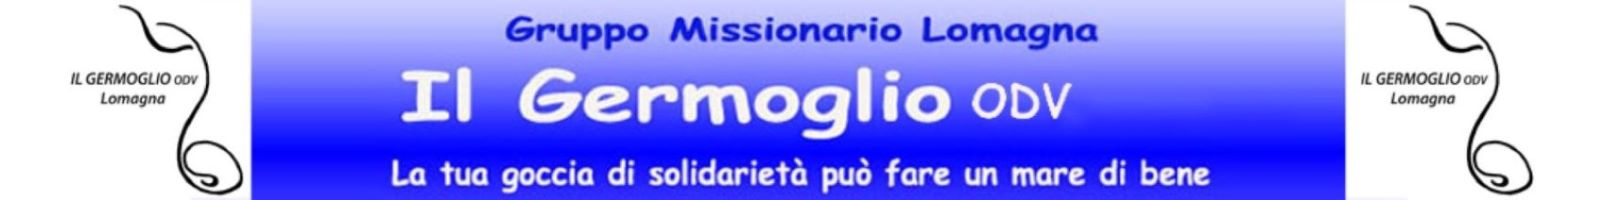 Gruppo Missionario Il Germoglio o.d.v. Lomagna